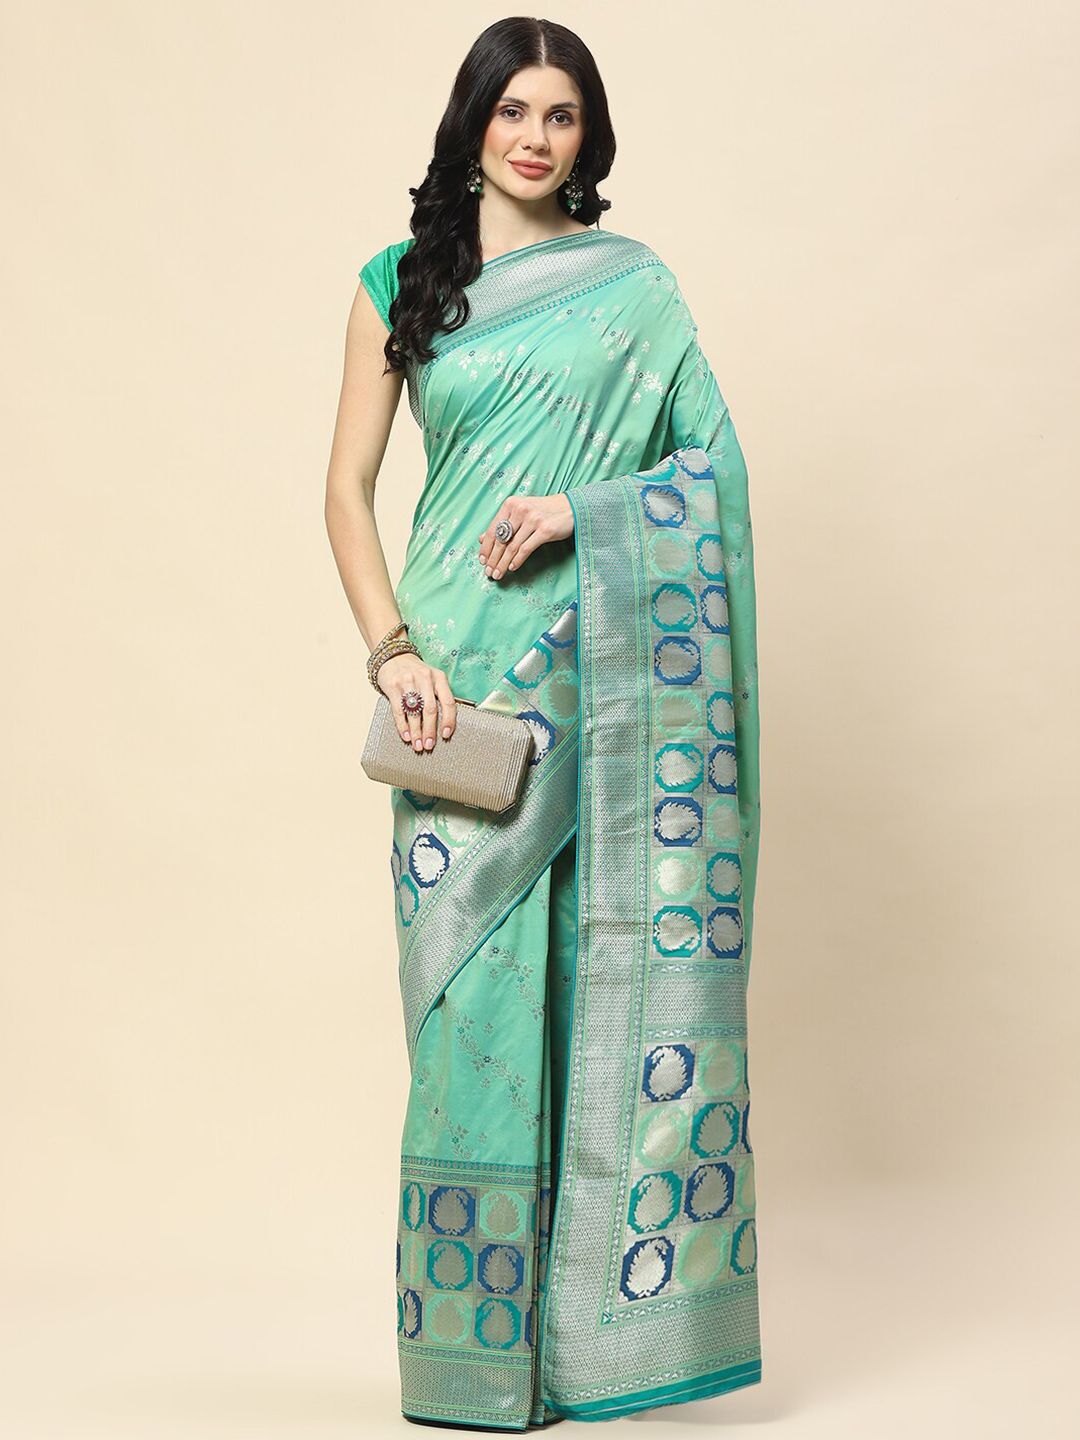 Meena Bazaar Woven Design Ethnic Motifs Zari Banarasi Saree Price in India